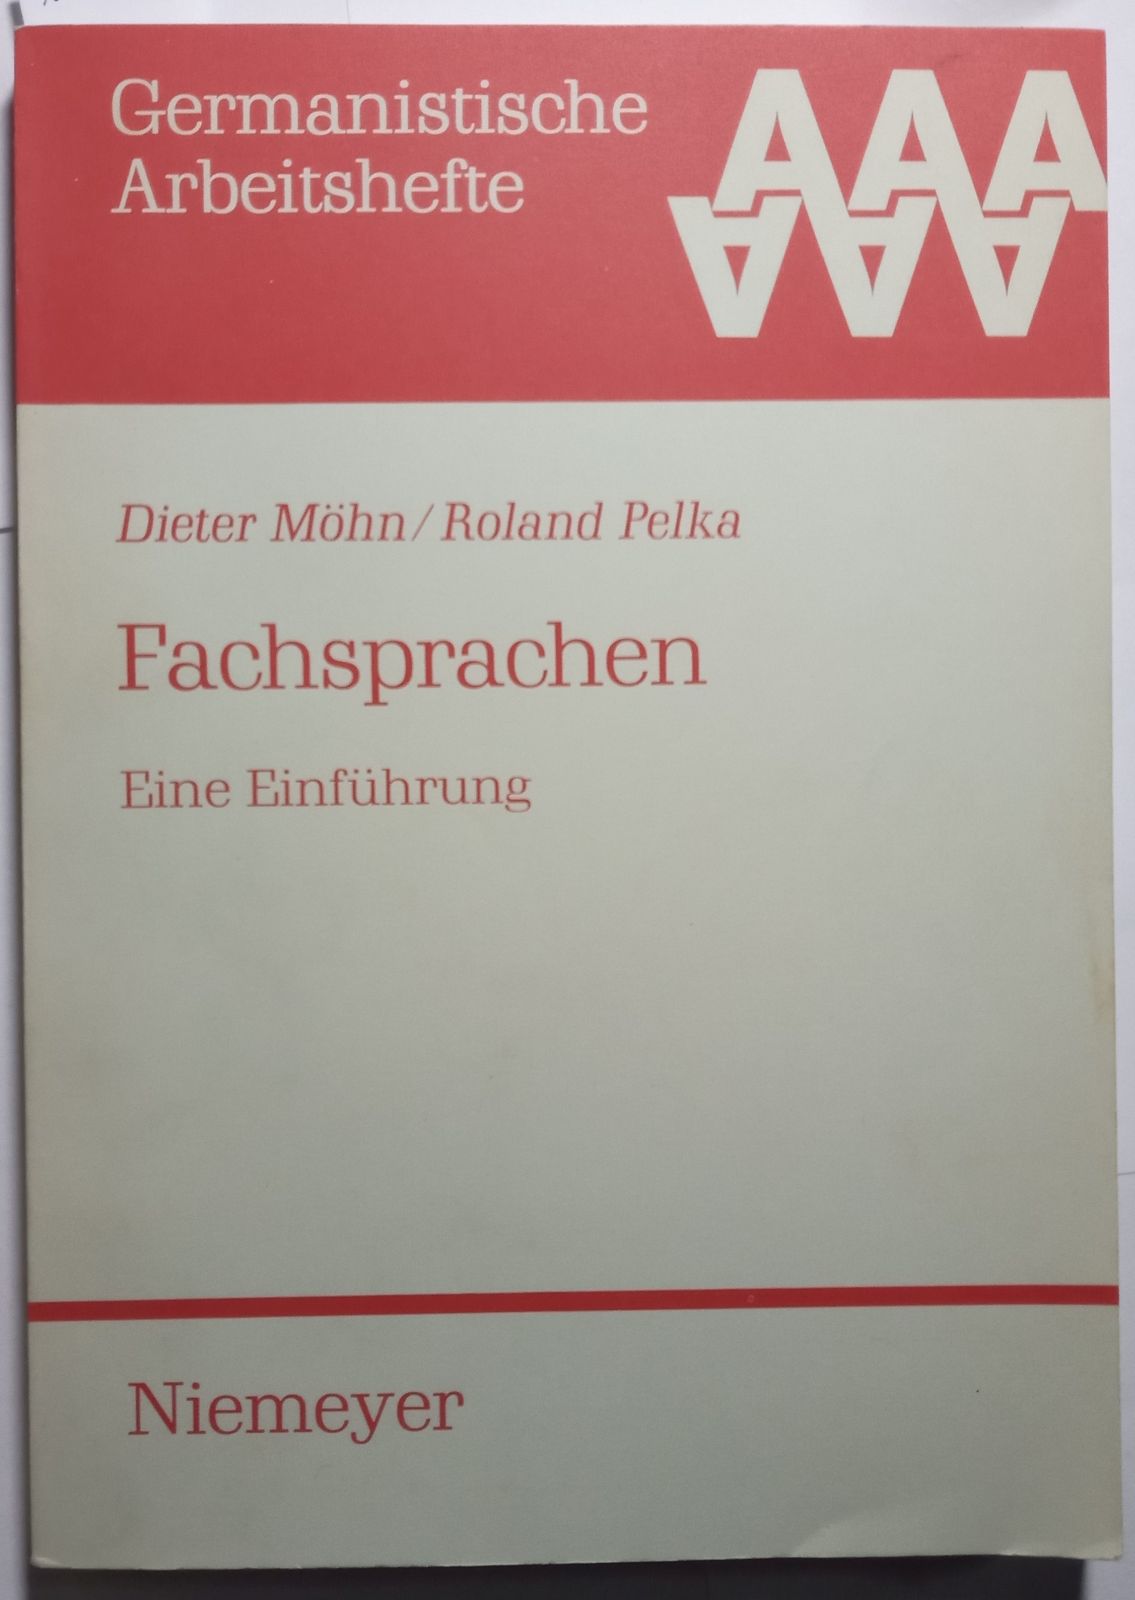 Fachsprachen: Eine Einführung (Germanistische Arbeitshefte)